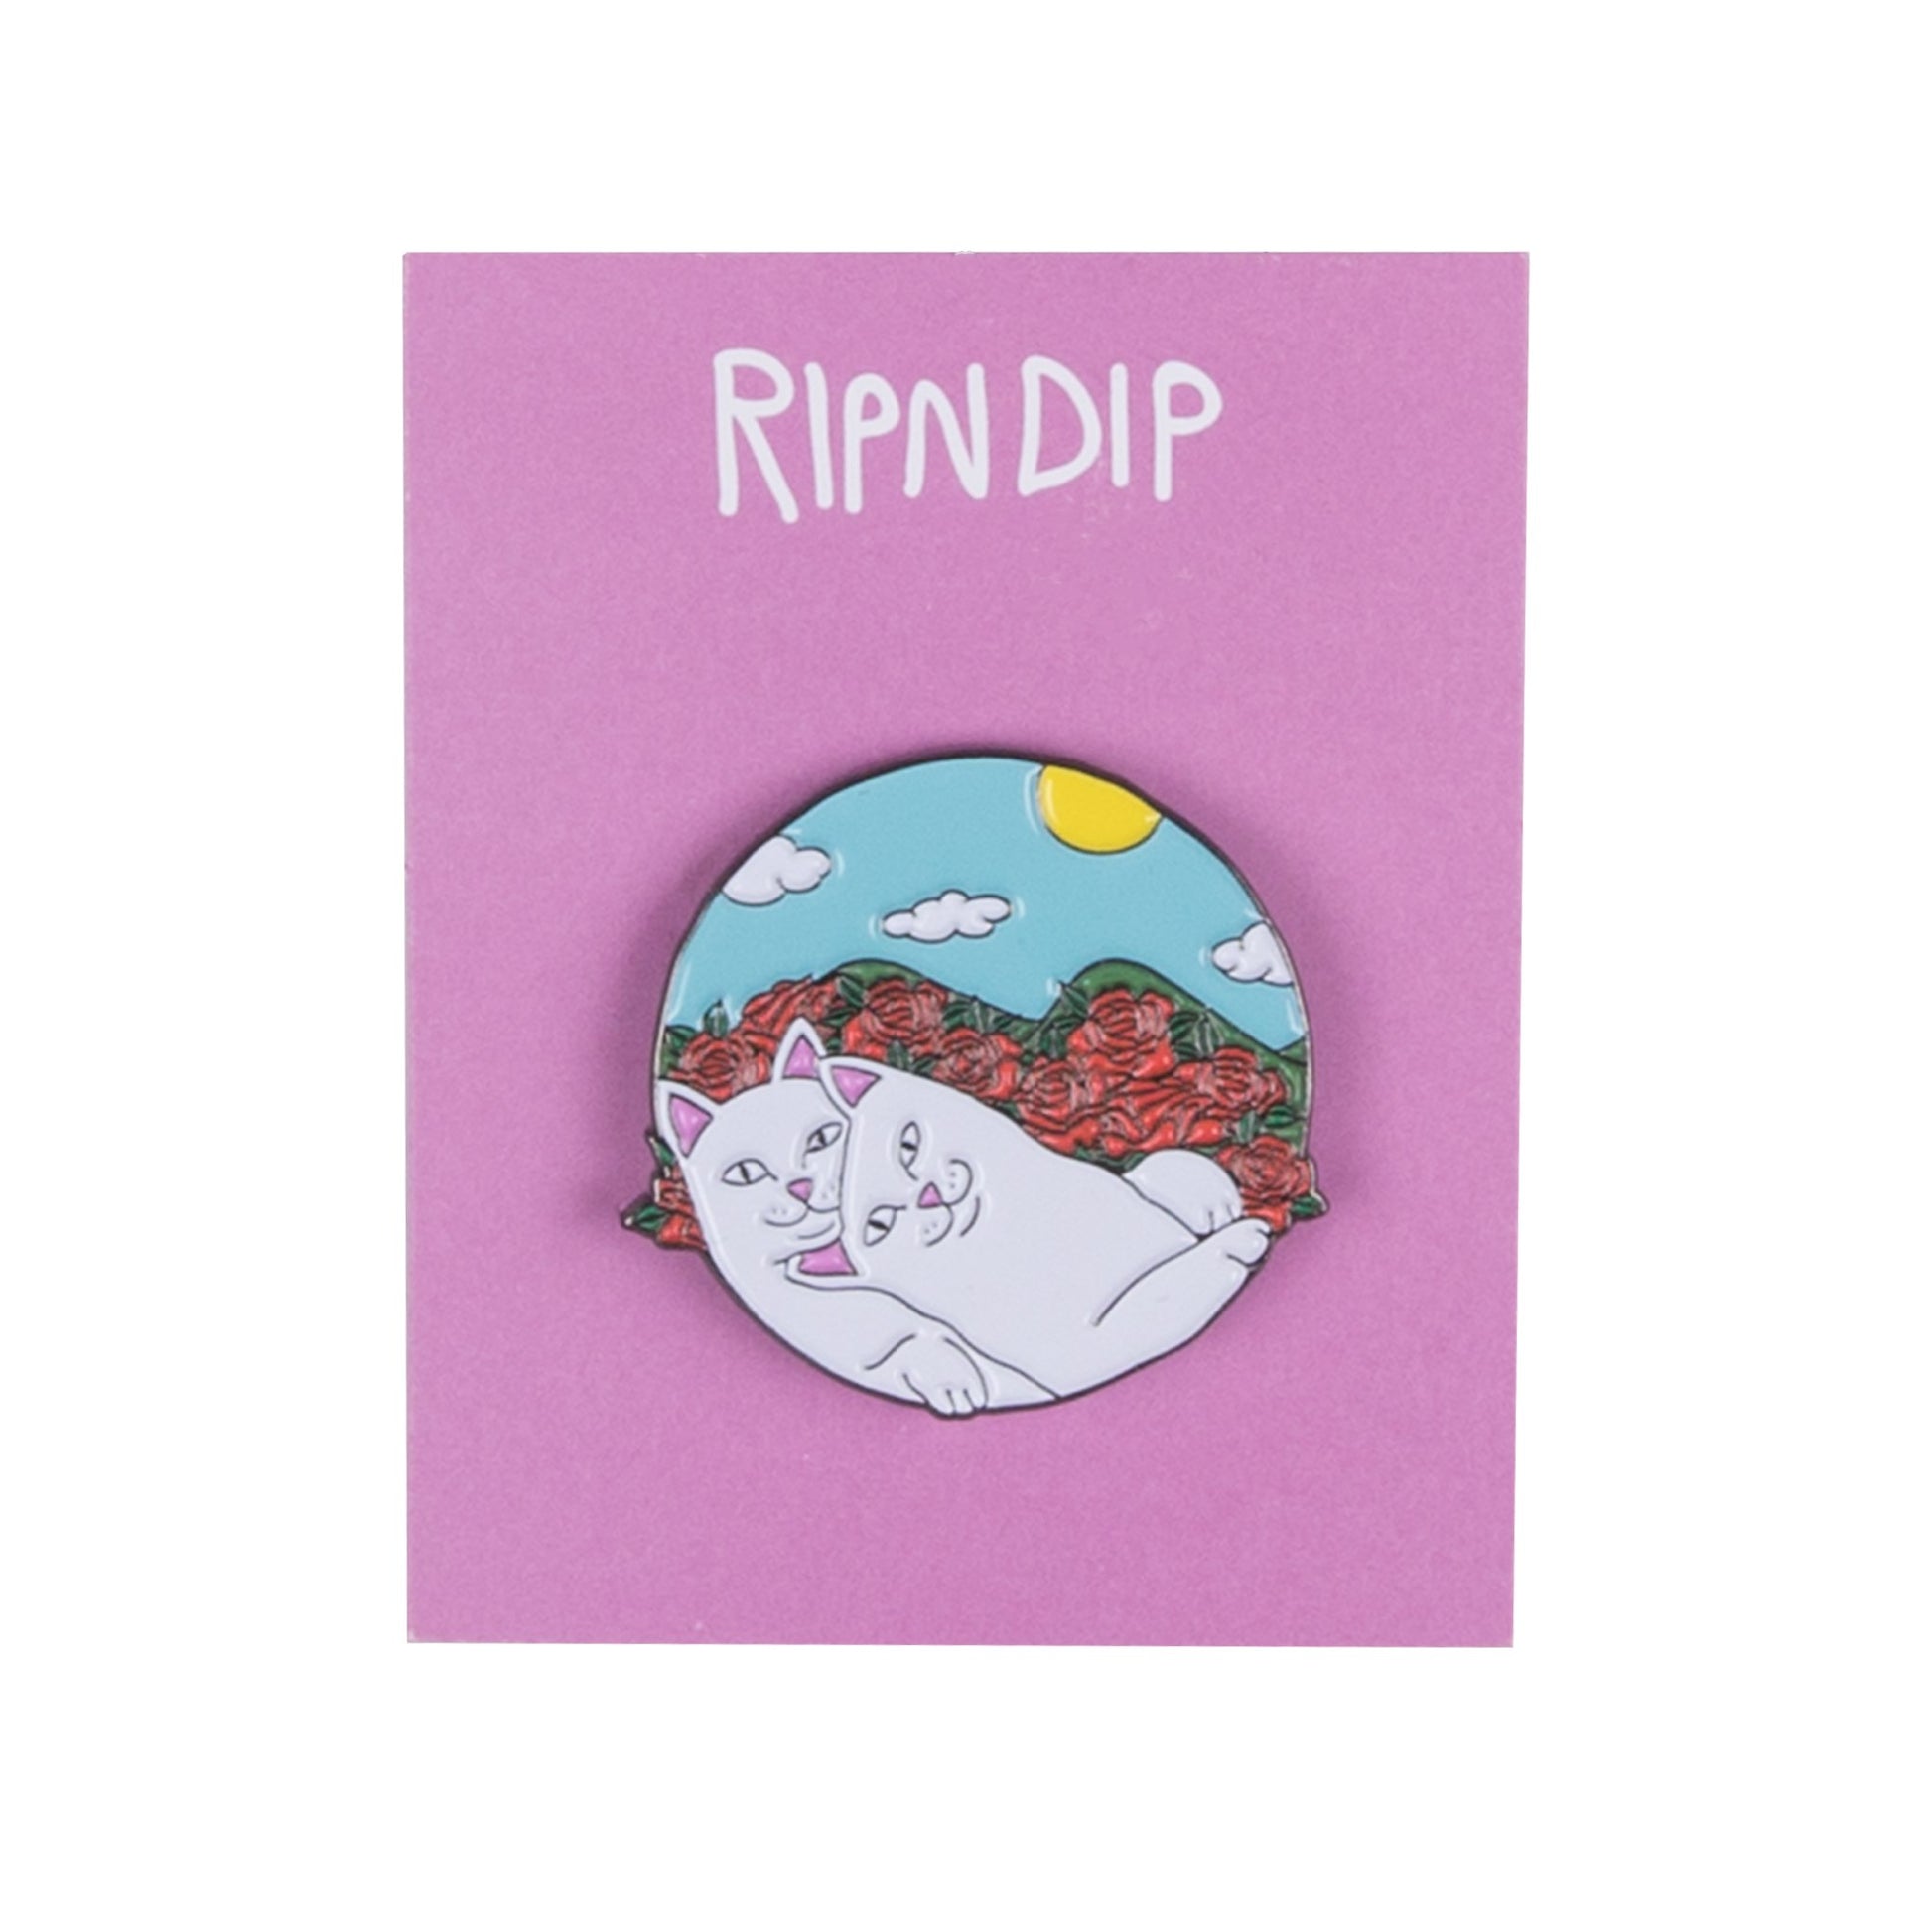 RIPNDIP - Cuddle Pin - The Giant Peach